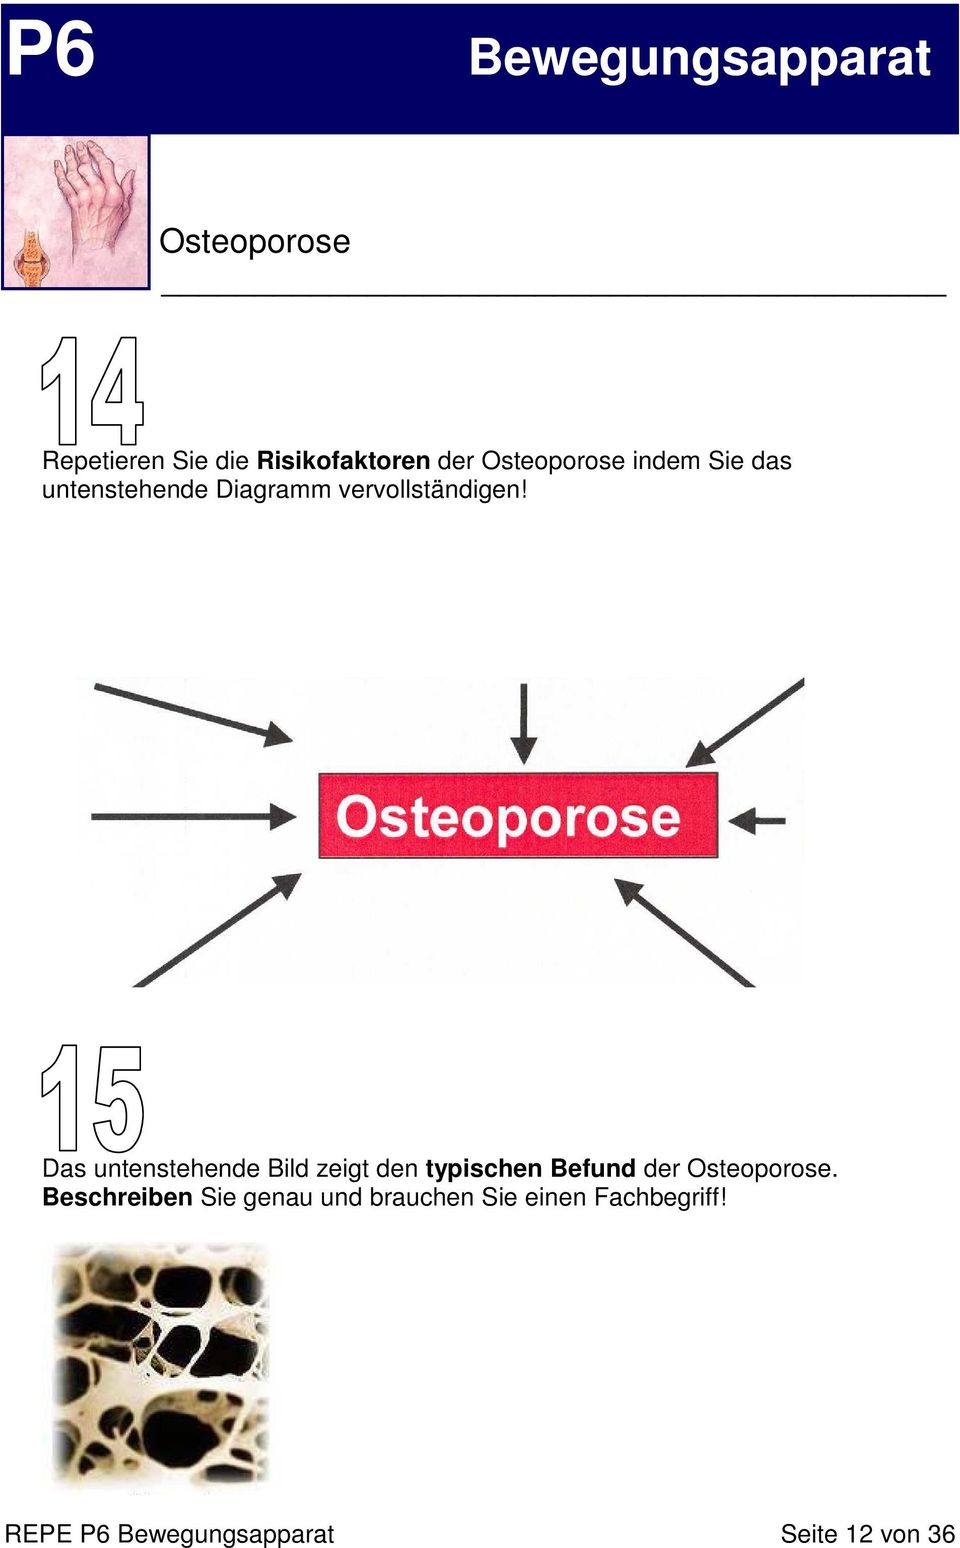 Das untenstehende Bild zeigt den typischen Befund der Osteoporose.